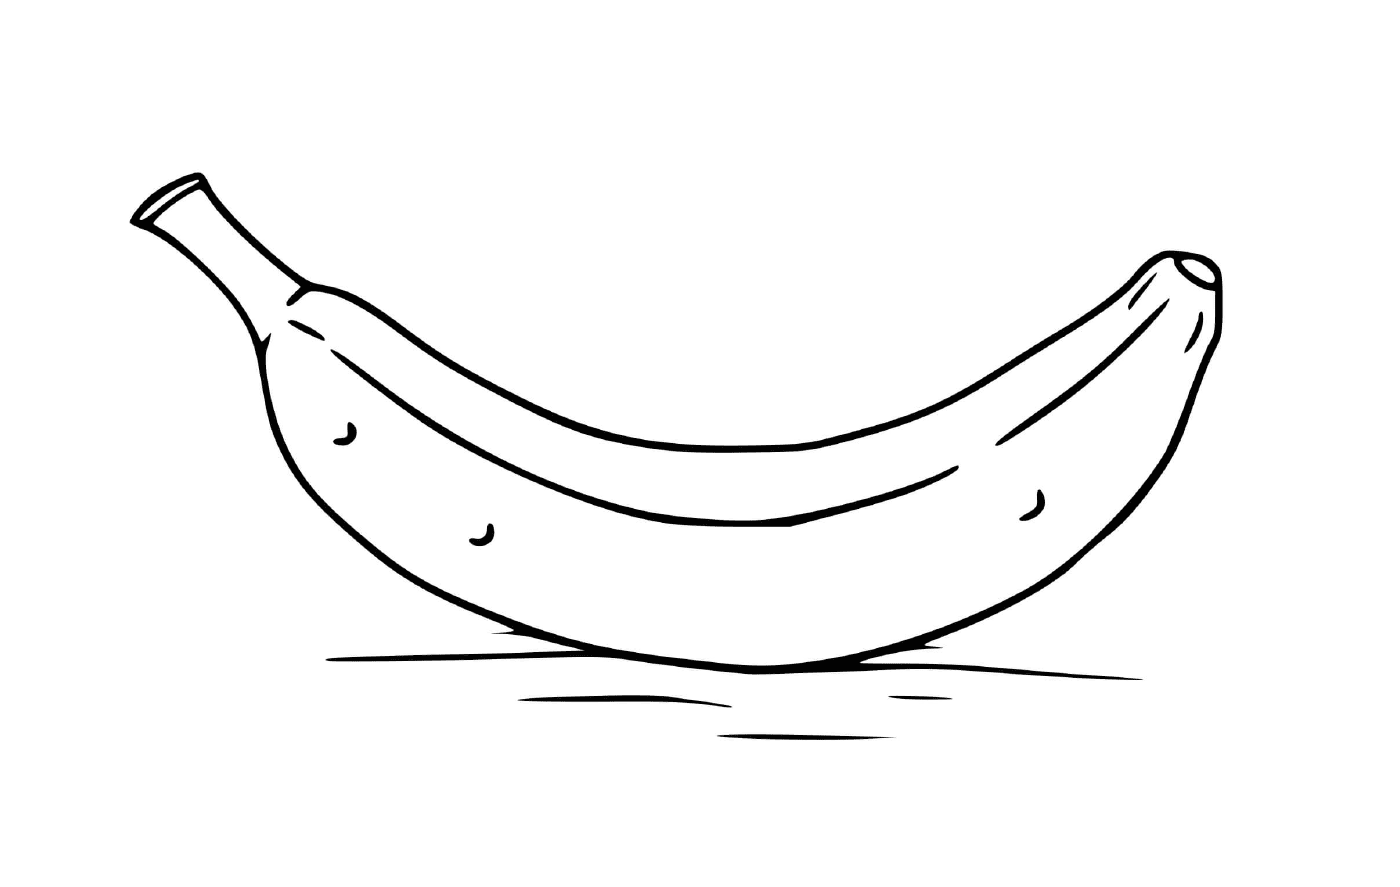 Кучка бананов на столе